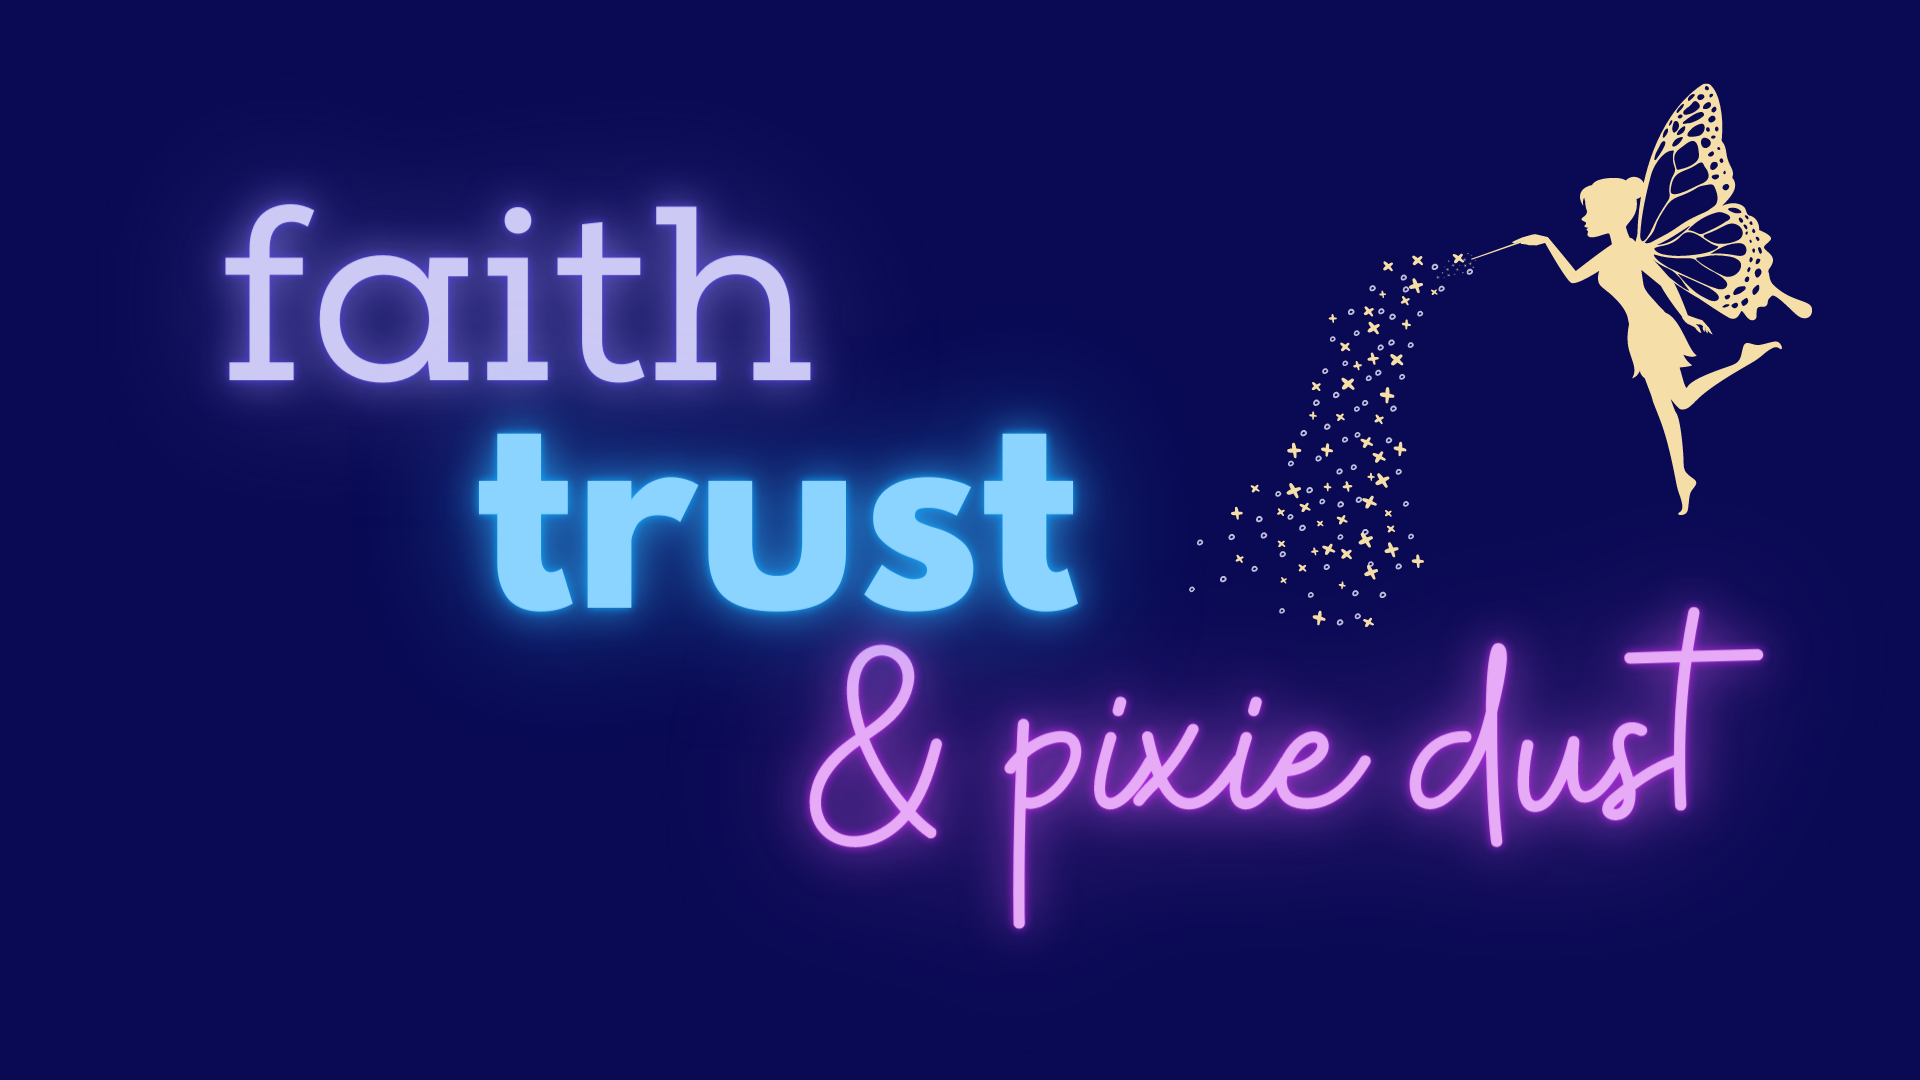 Faith, Trust, and Pixie Dust